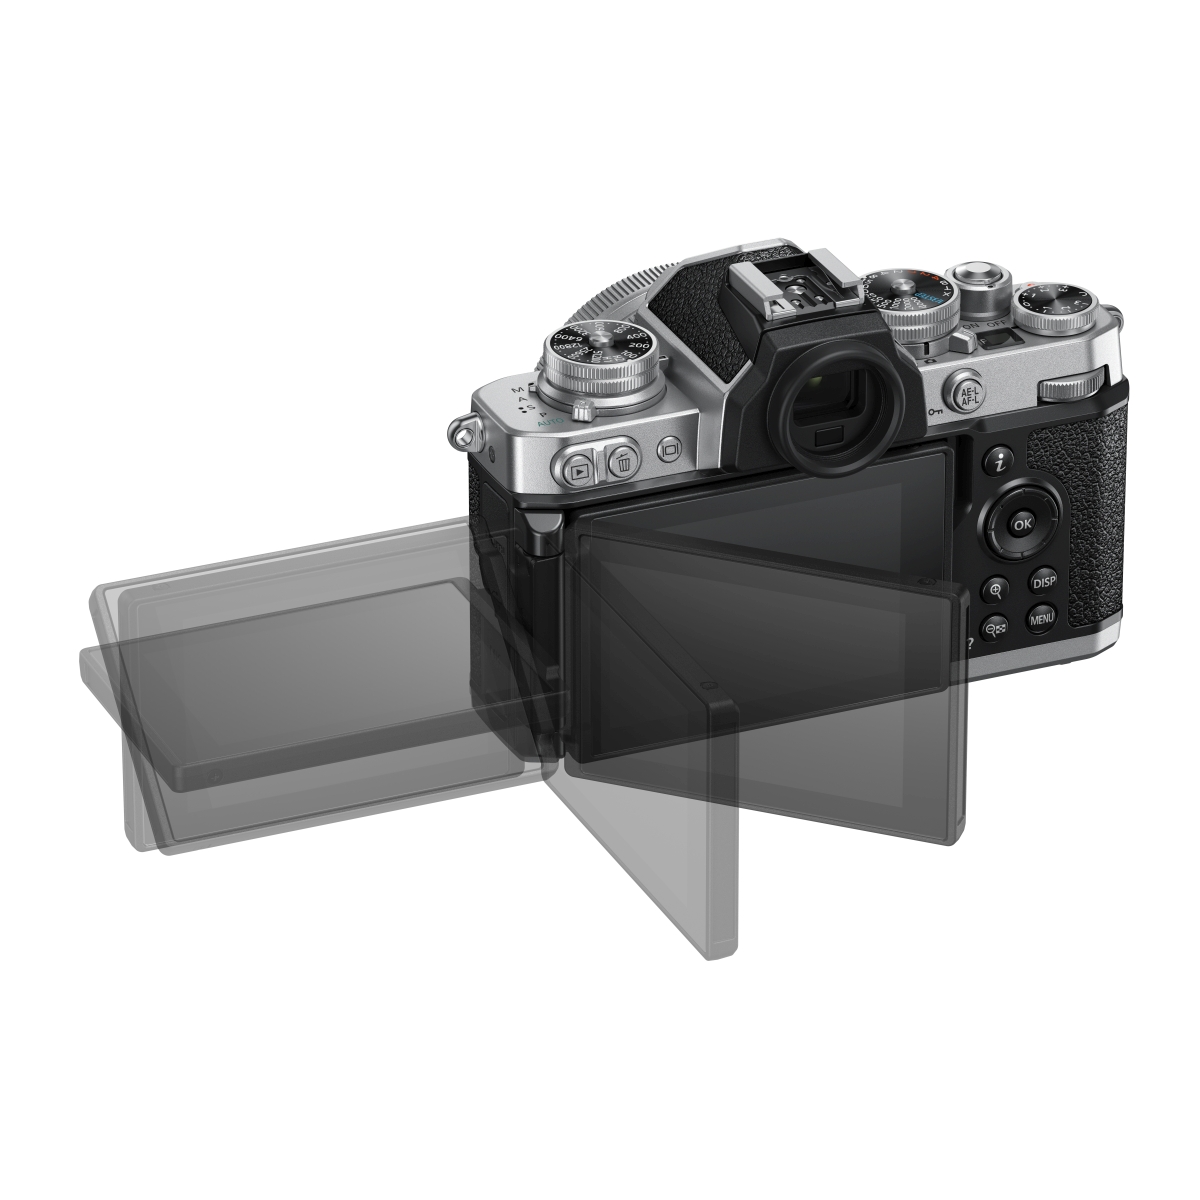 Nikon Z fc mit 16-50 mm Z DX VR